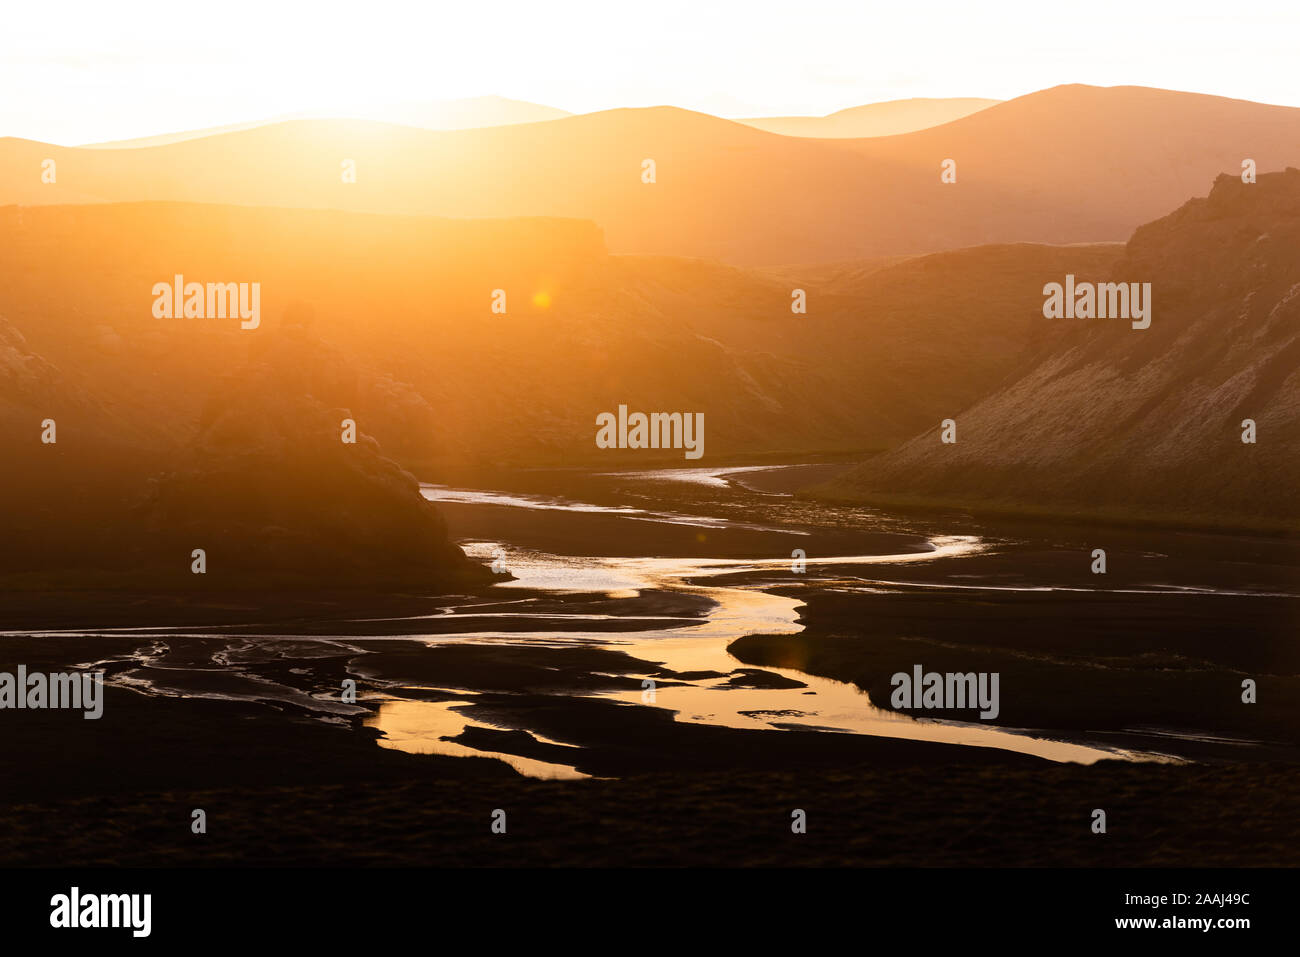 Sunset over mountain ranges, Landmannalaugar, Highlands, Iceland Stock Photo